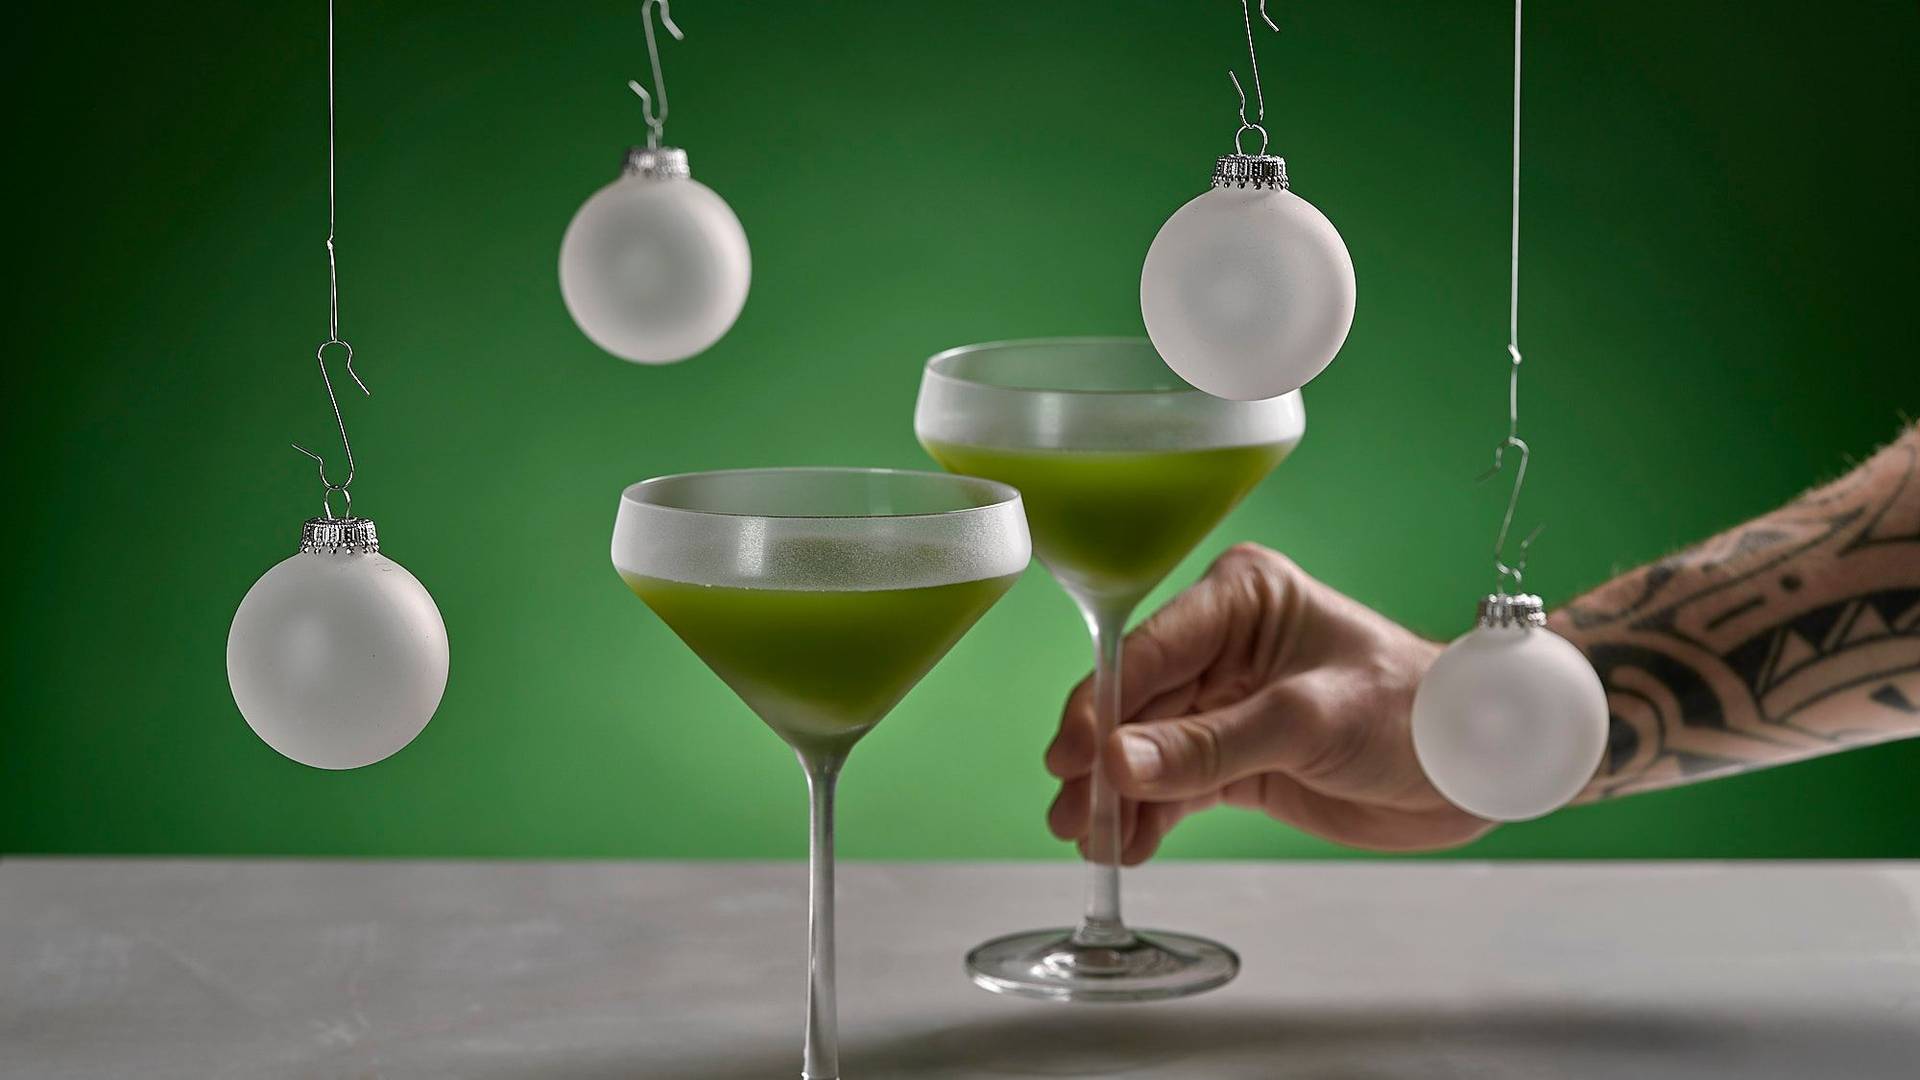 zwei gläser des alkoholfreien grinch weihnachts cocktails auf weißem sapienstone top mit grünem hintergrund